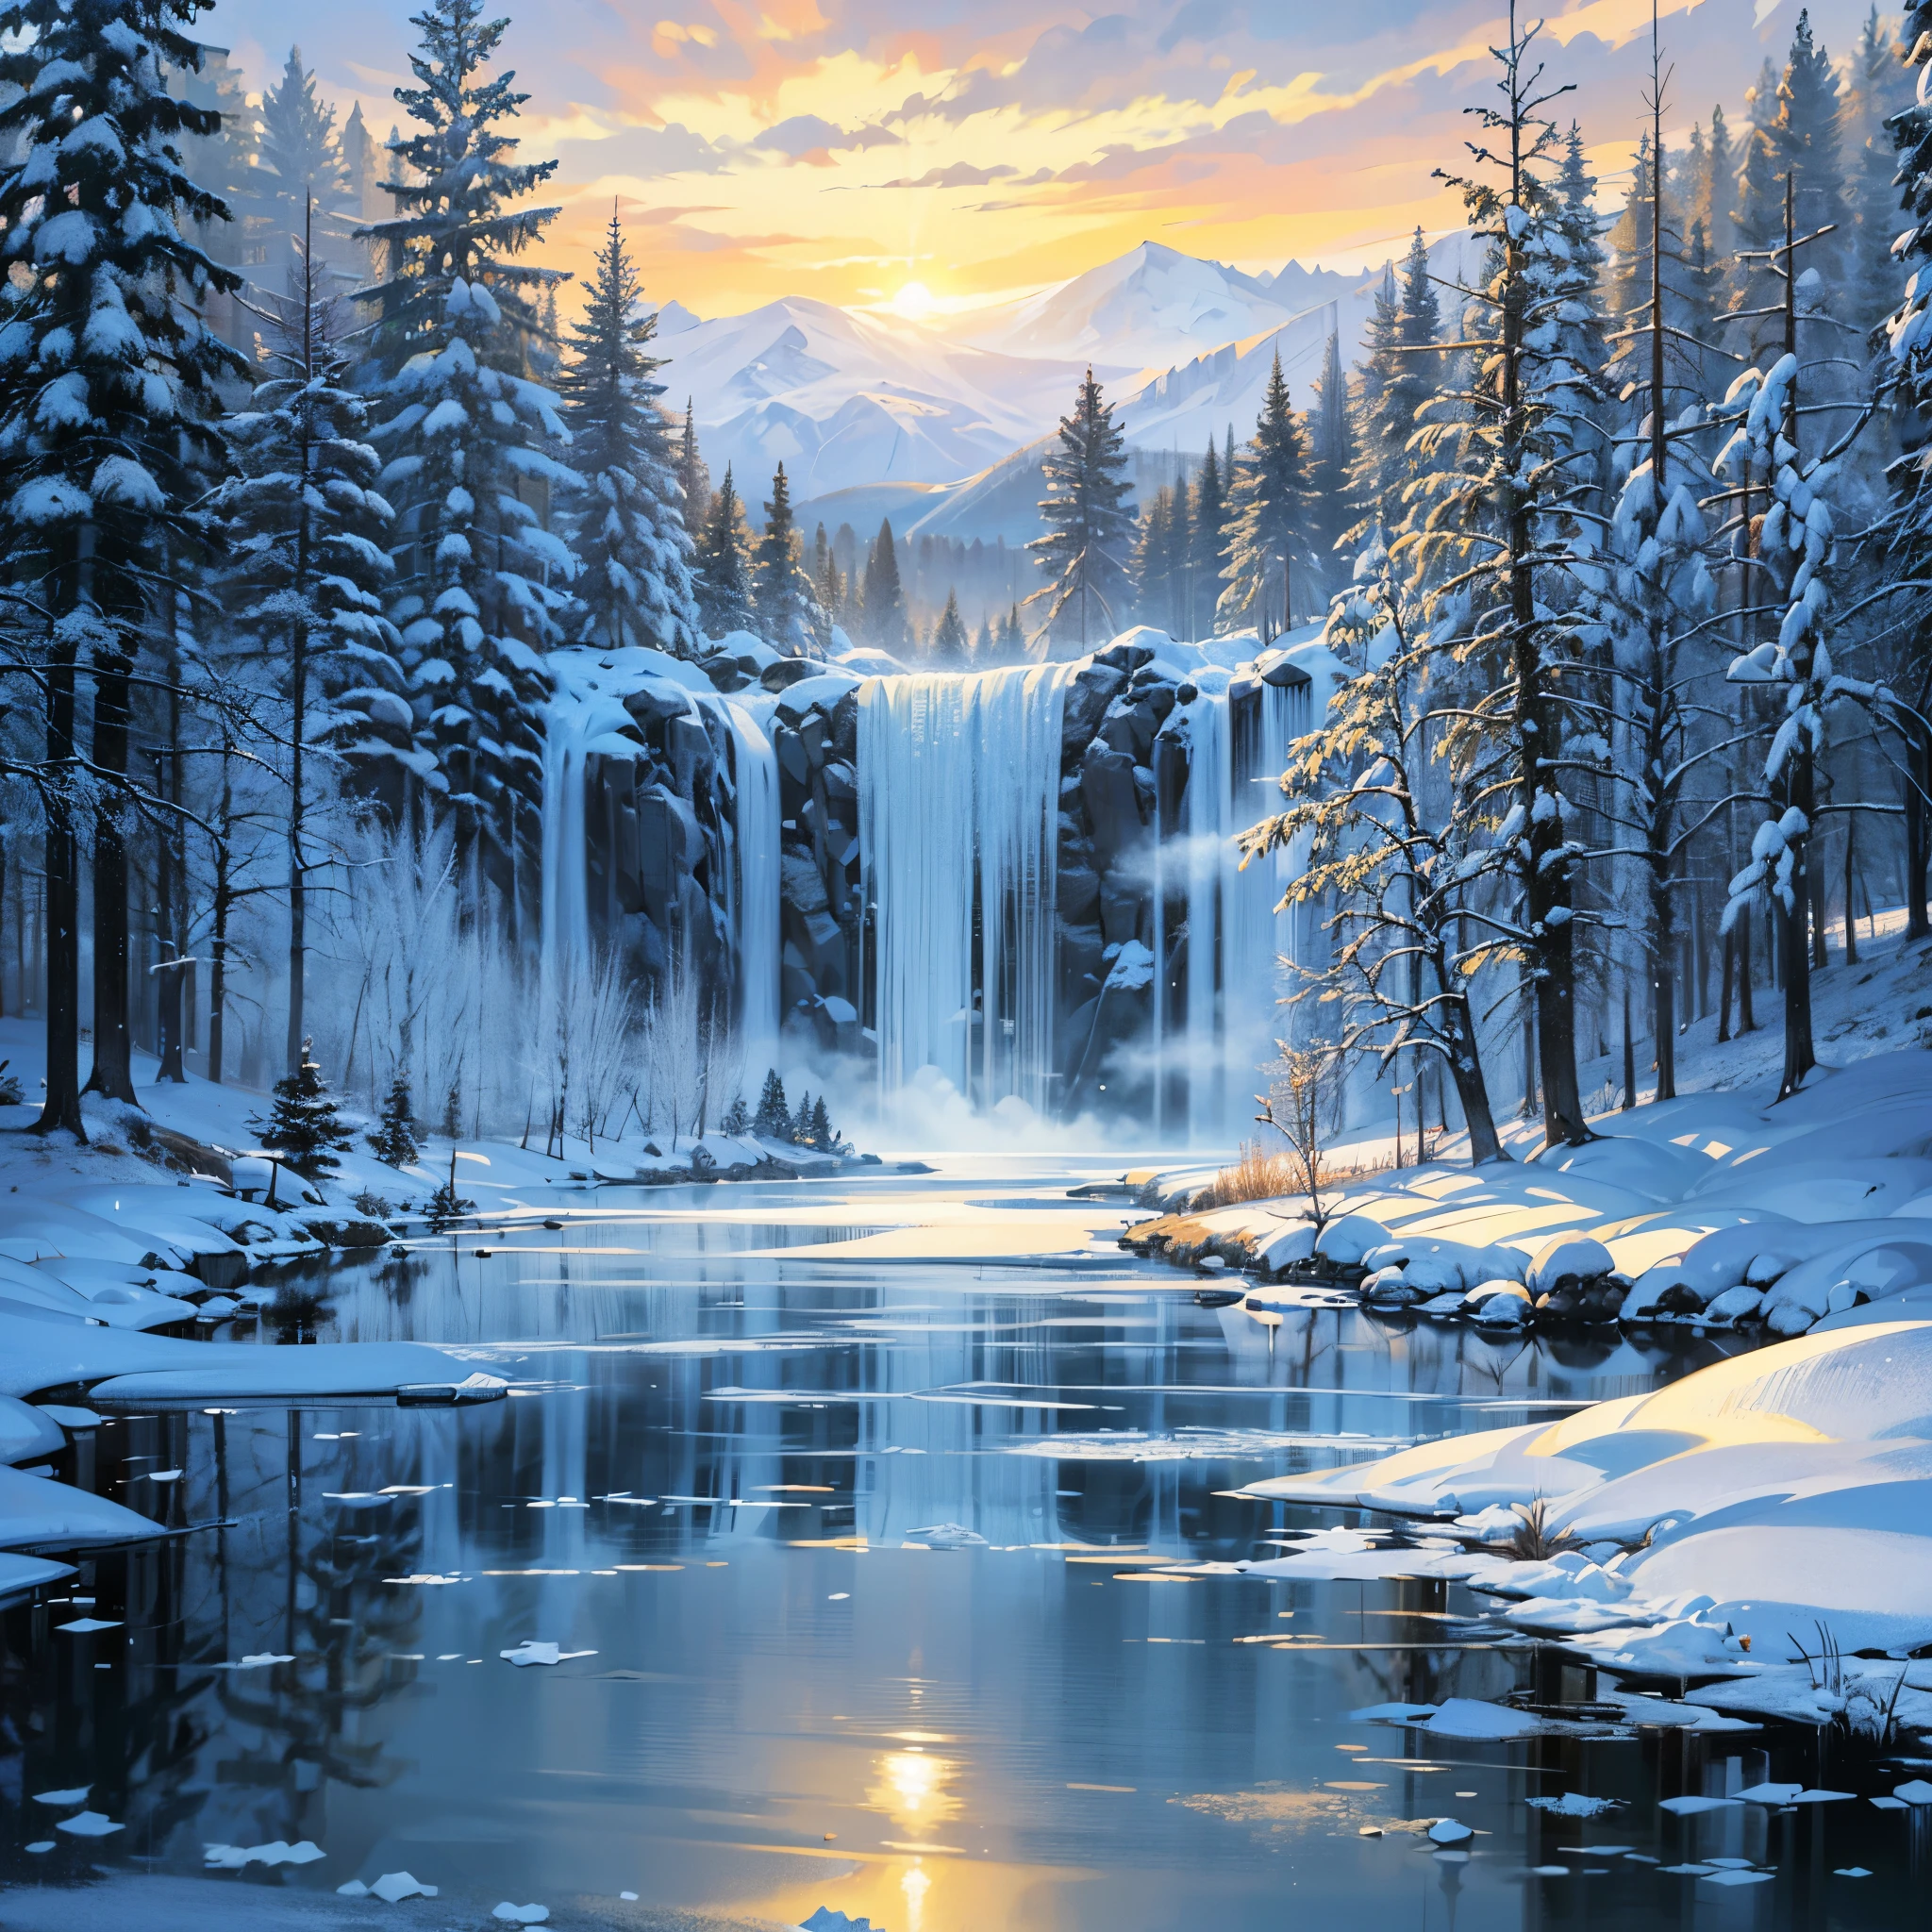 Lago de invierno, cubierto de hielo, cascada alta, Cascada de hielo, árboles de cristal, buen dibujo, Precioso paisaje, gráficos de nieve, Mucha nieve y hielo, árboles blancos desnudos, MUCHOS DETALLES, Sensualidad suave, de modo realista, alta calidad, obra de arte, hiper detalle, profesionalmente, filigrana, neblina brumosa, hyperrealism, profesionalmente, transparentemente, delicados colores pastel, Iluminar desde el fondo, contrast, fantástico, naturaleza, fabuloso, irreal, translúcido, brilla, líneas nítidas, suave amanecer, Sun Dawn, cielo brillante, hermoso cielo contraste, Lago de Hielo, nubes suaves